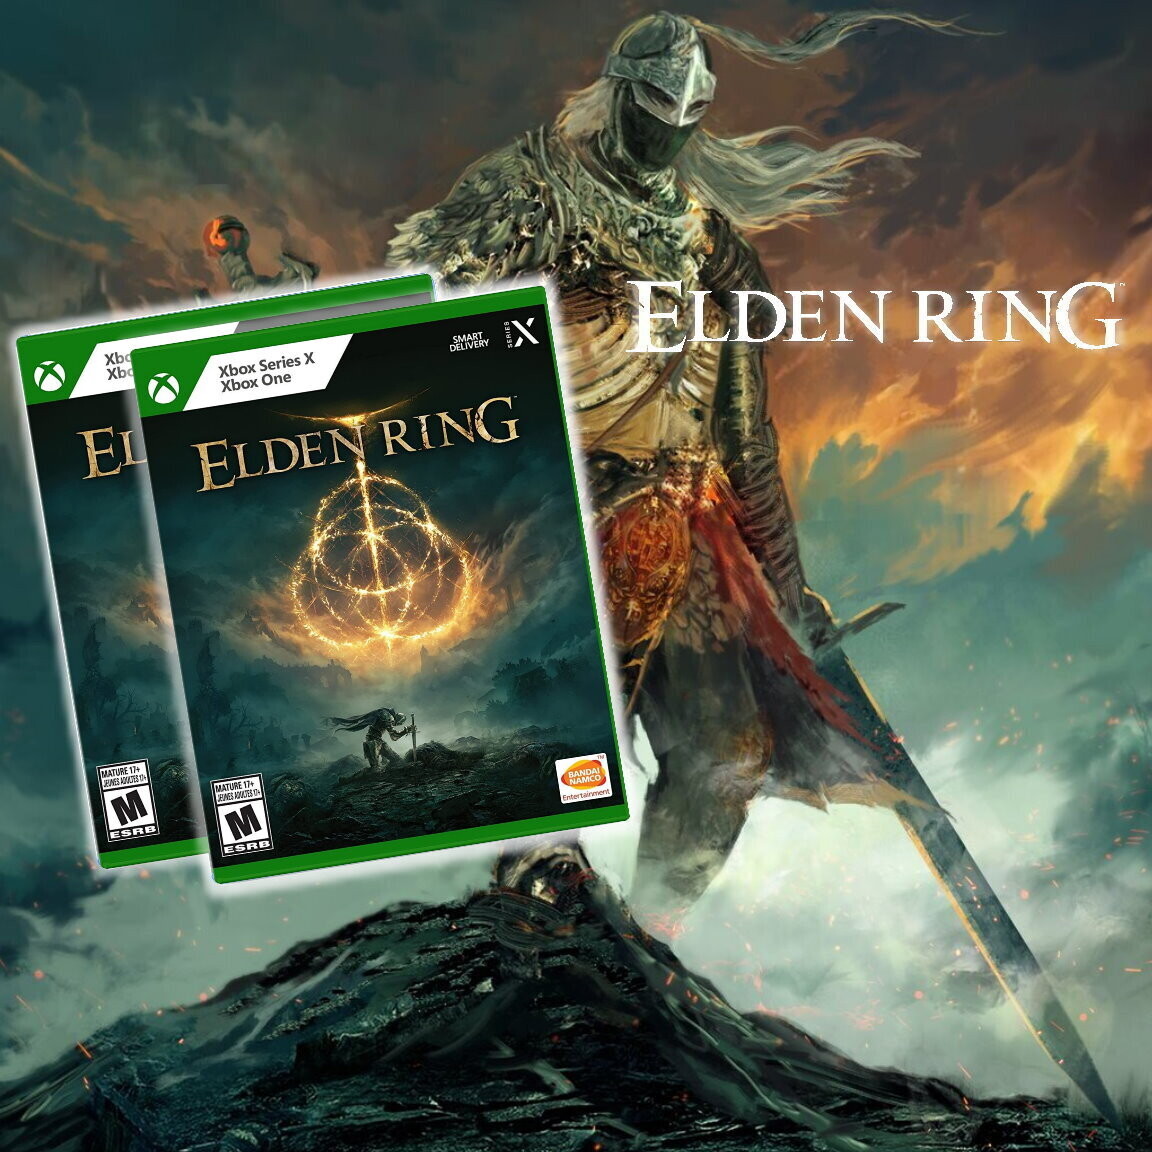 ELDEN RING - XBOX ONE & SERIES X